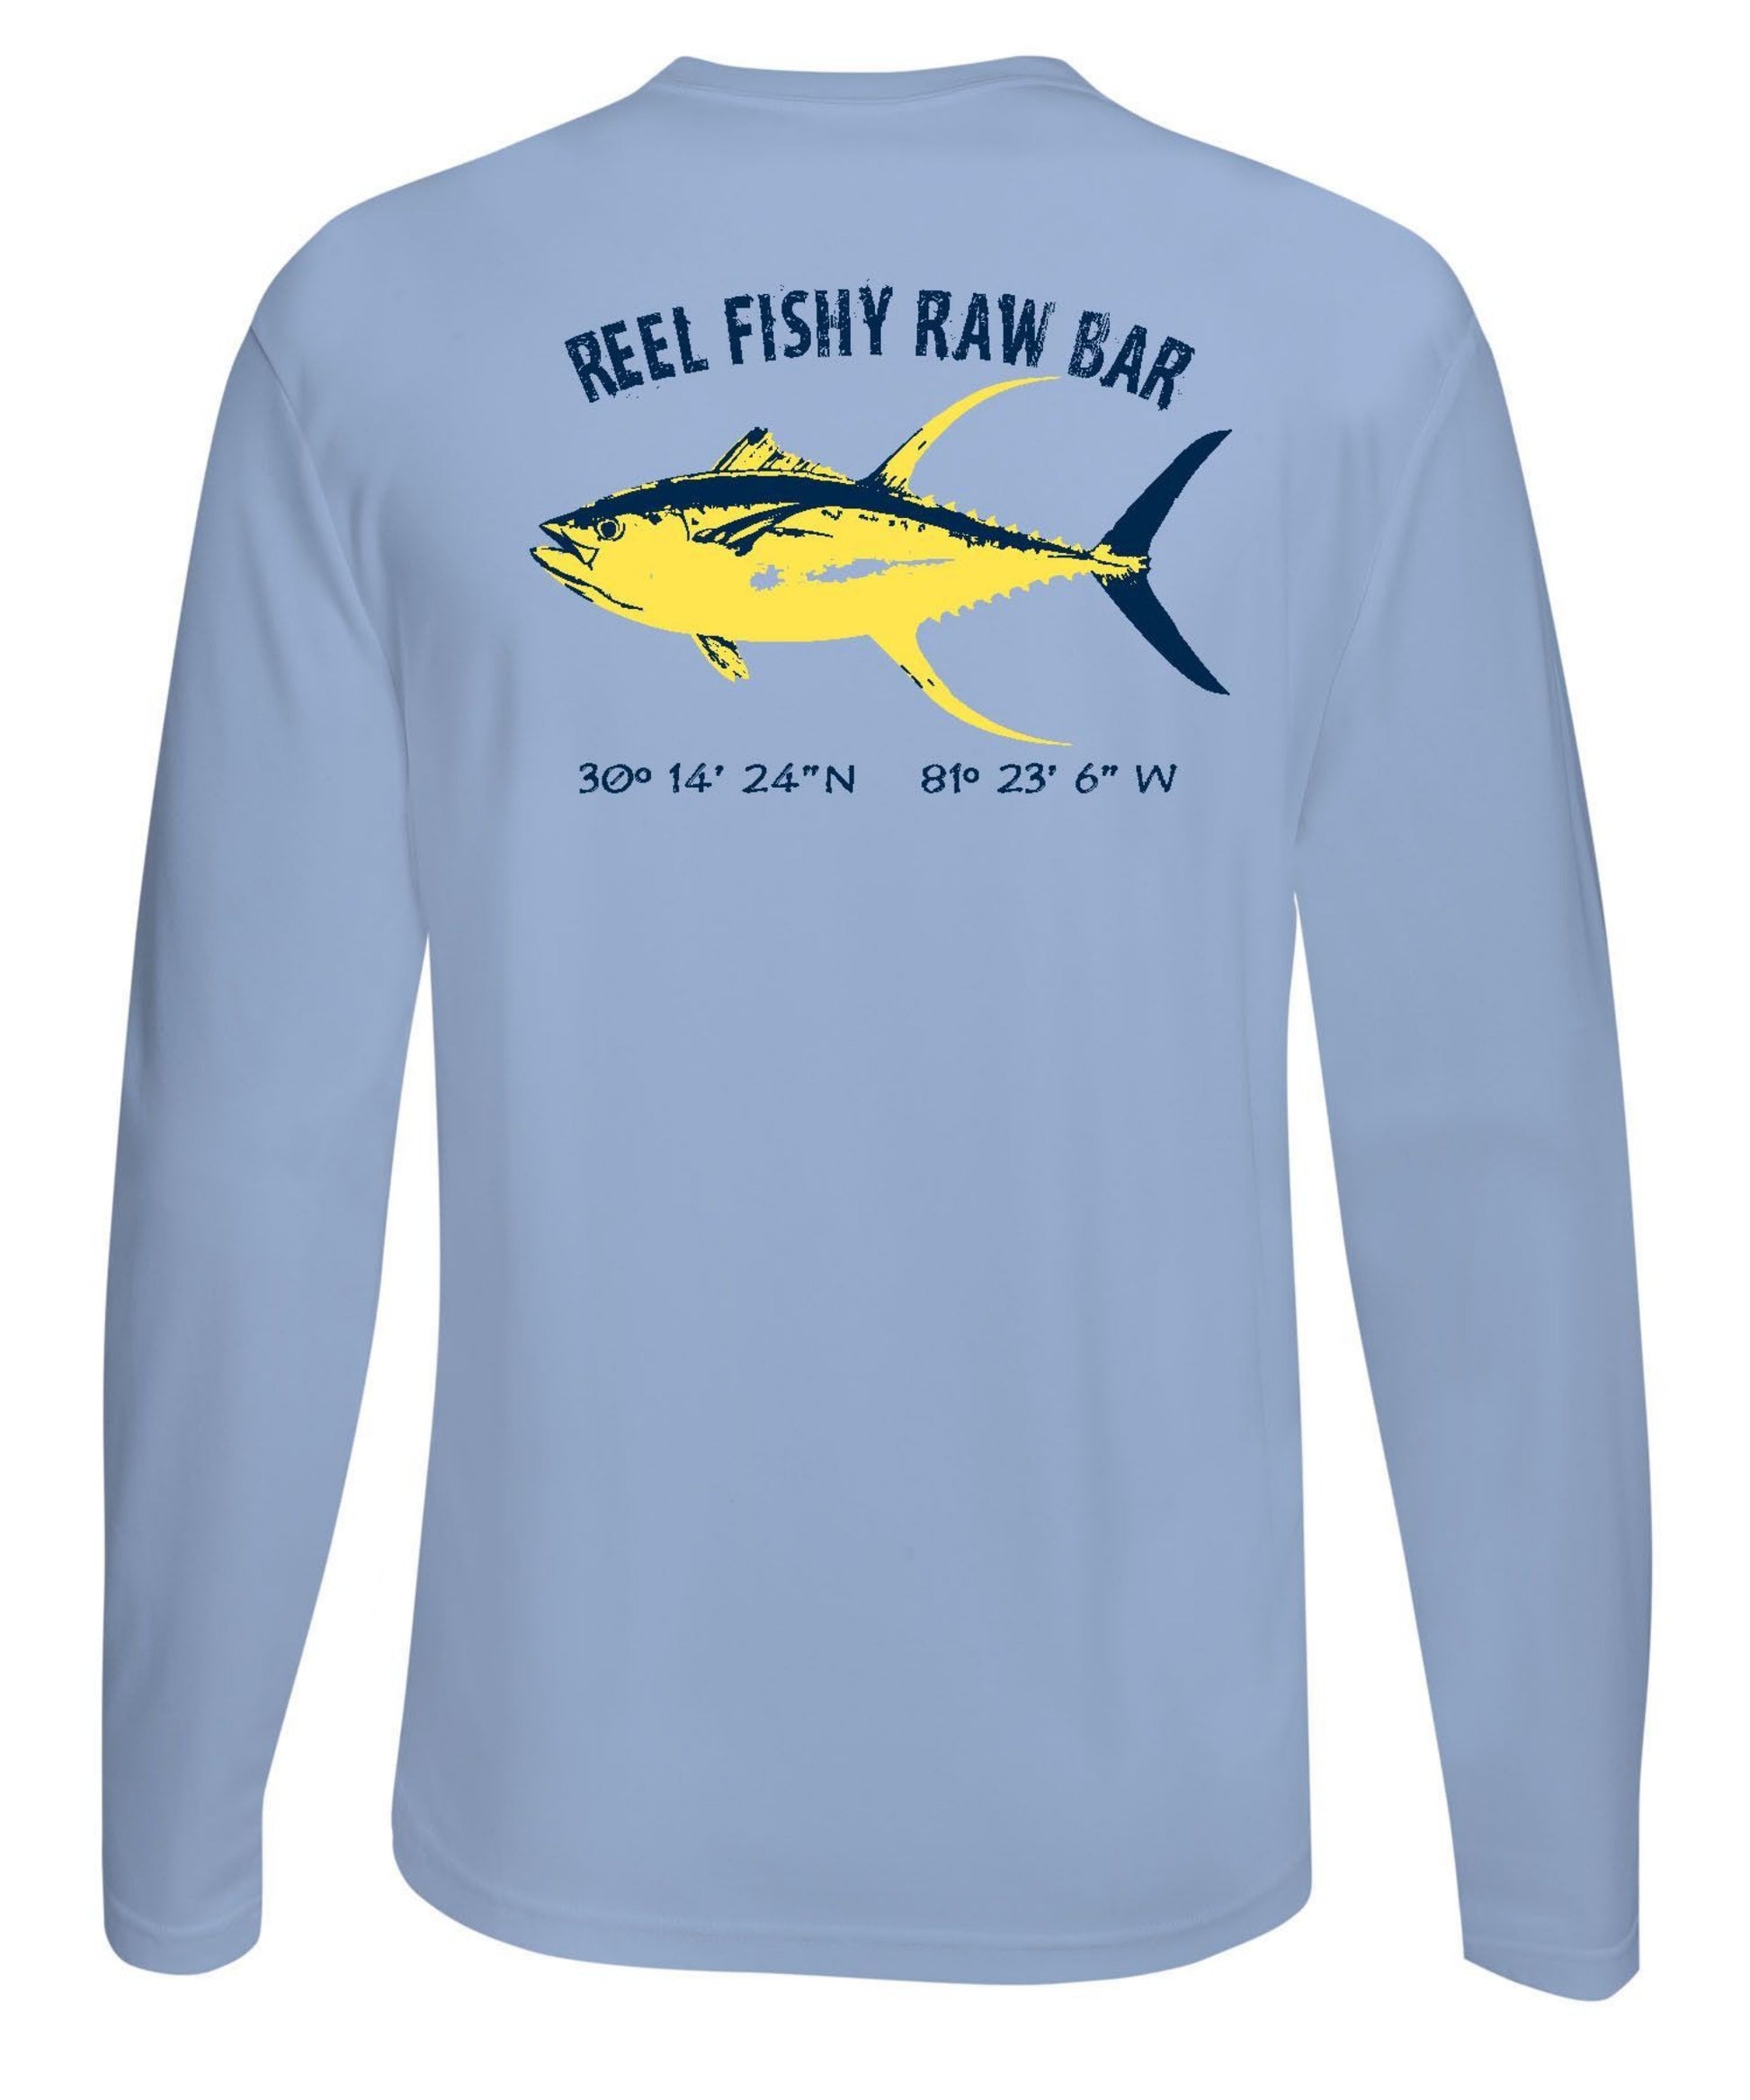 Tuna Fishing Performance Dry-Fit Sun Shirt 50+Upf - Reel Fishy Raw Bar XS / Lt. Blue L/S - unisex